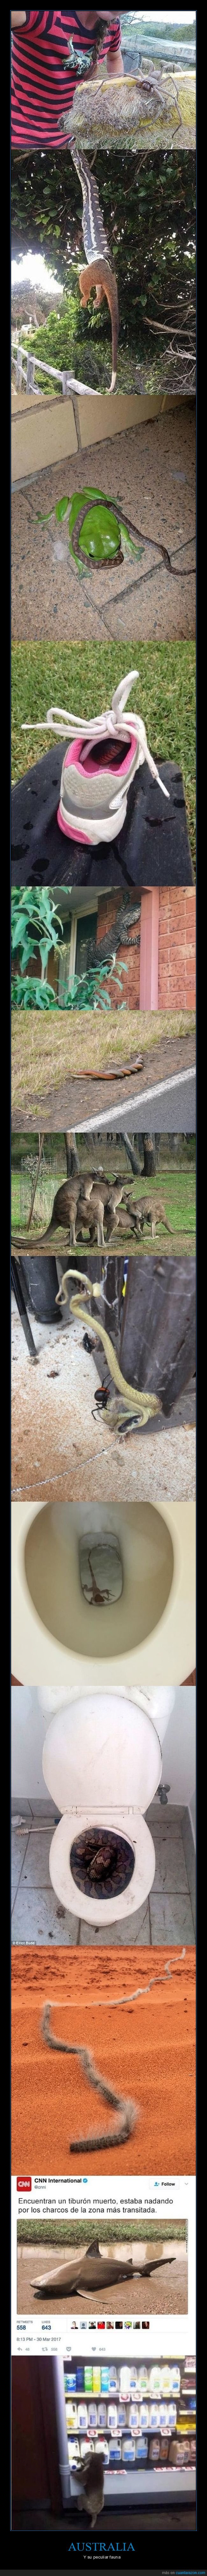 australia,animales